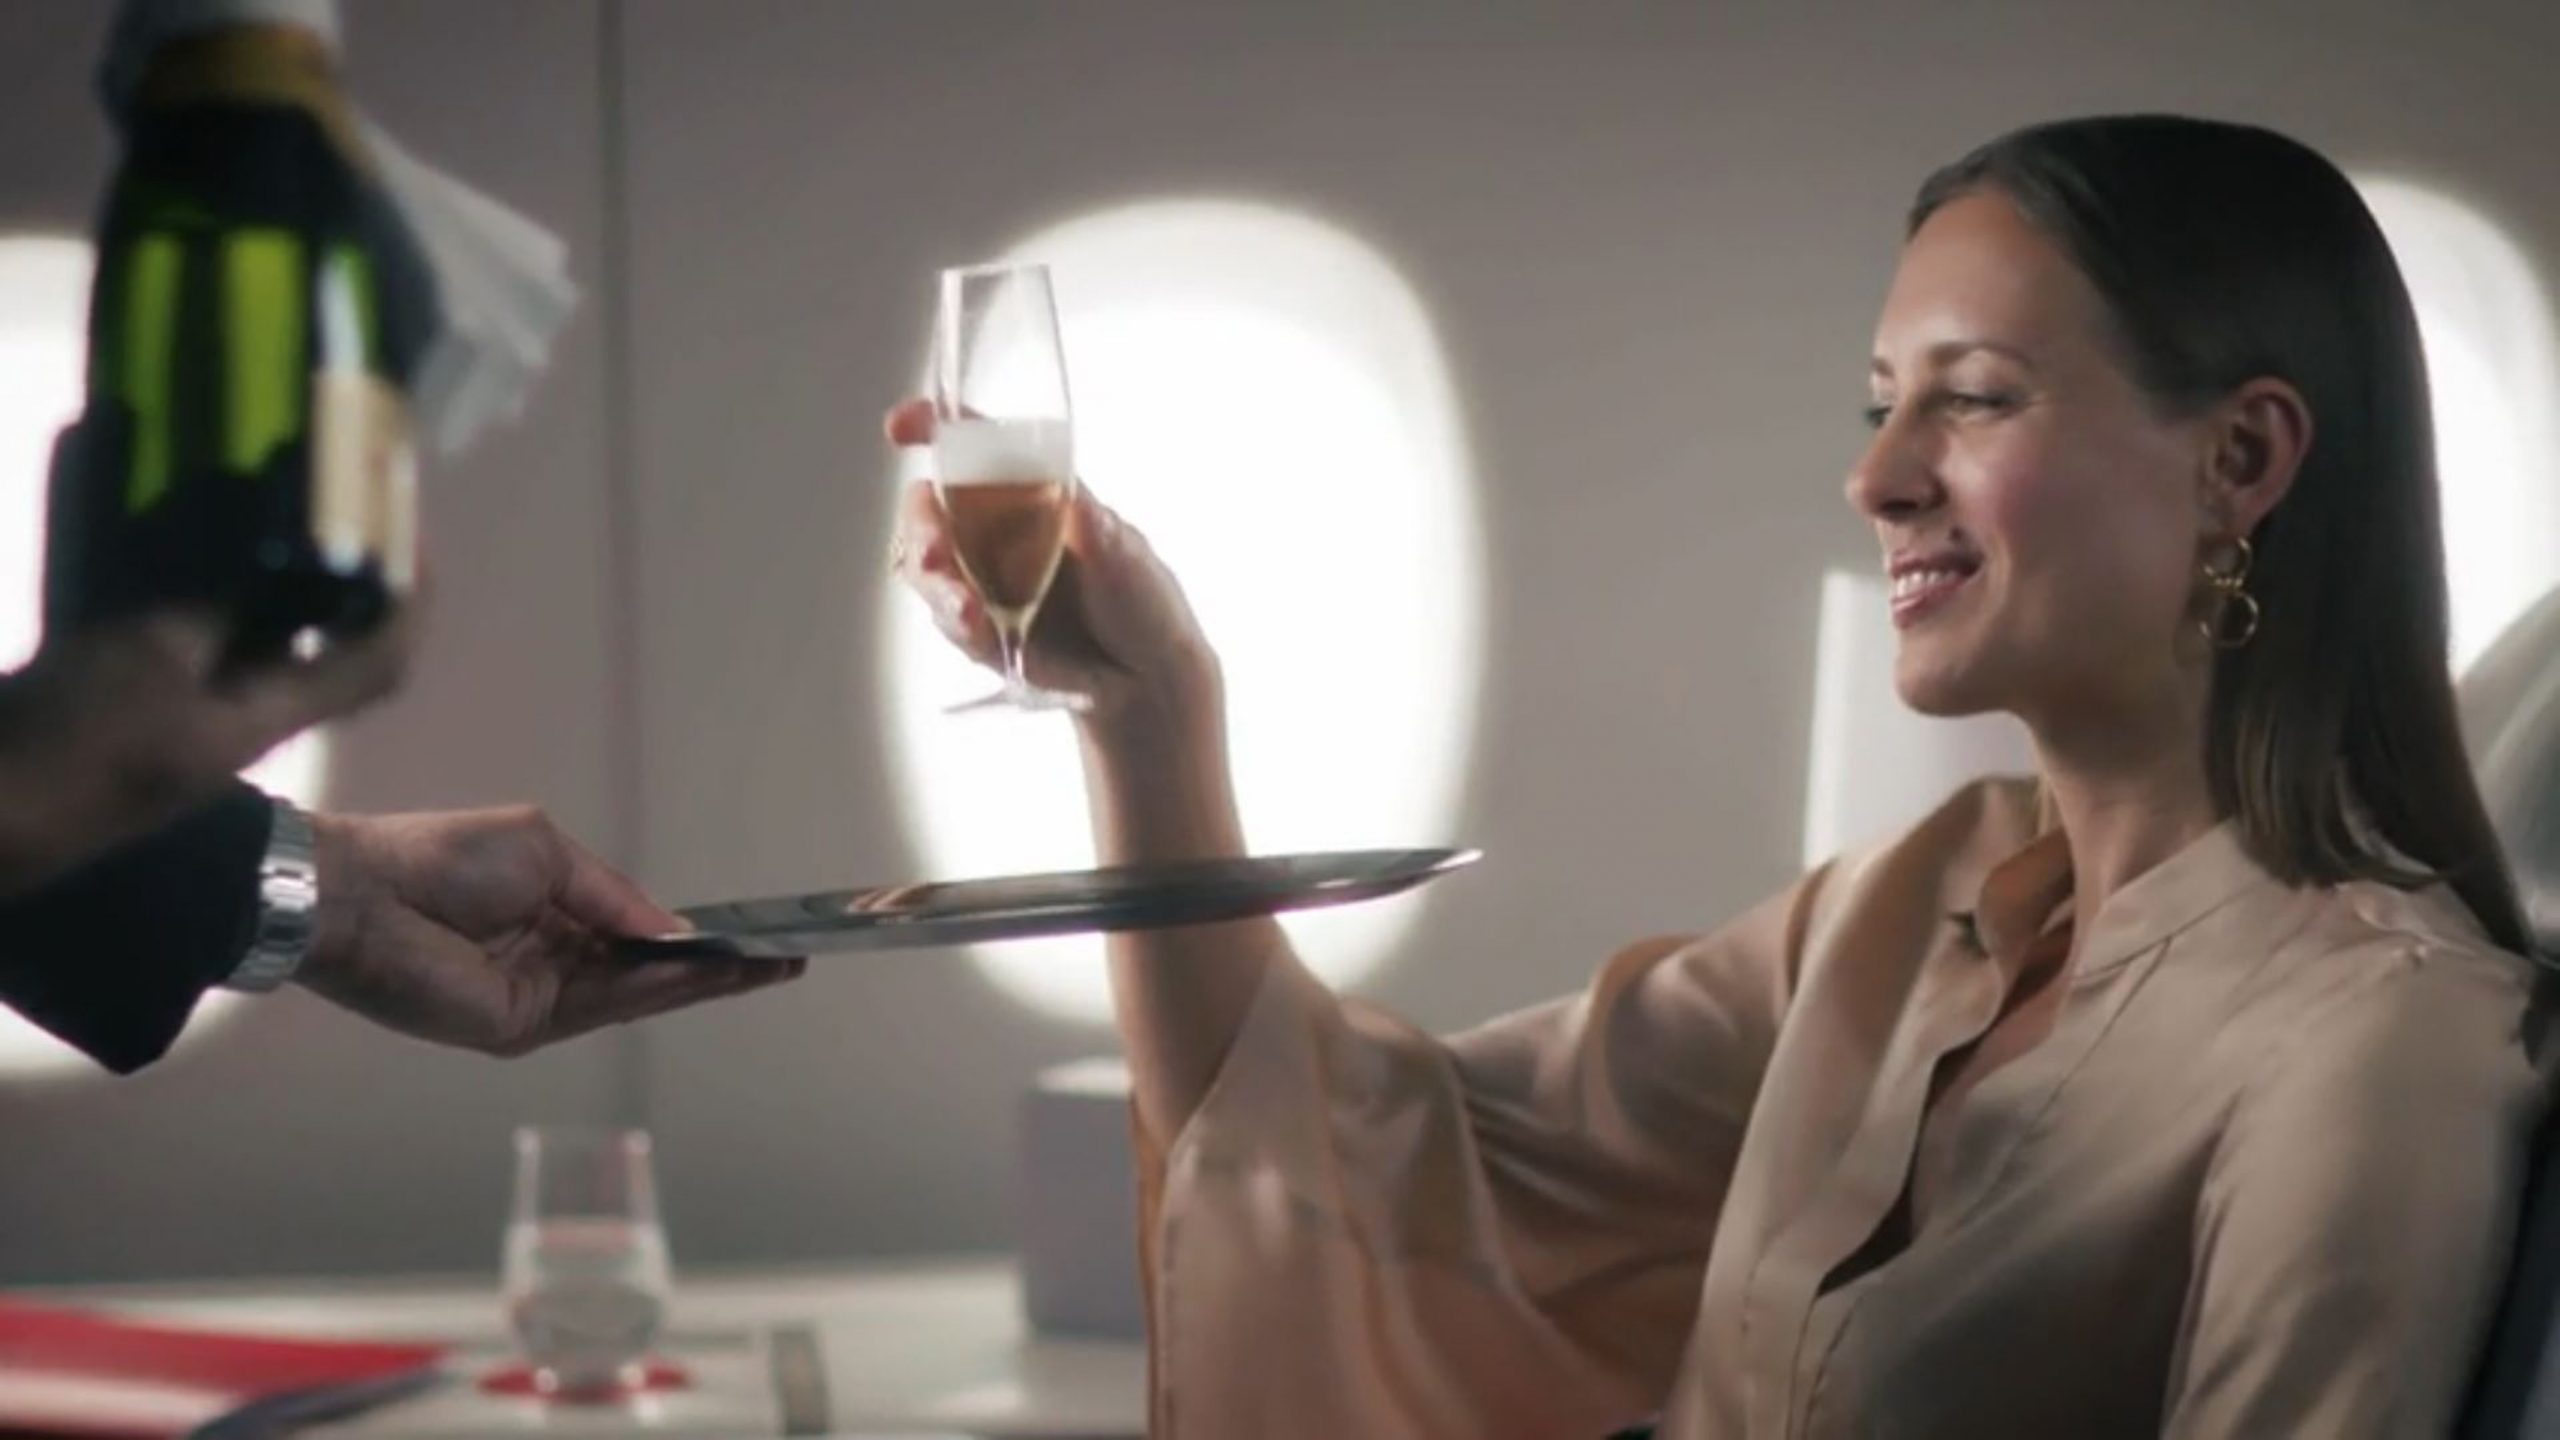 Extraits d'une vidéo de promotion d'Air France pour sa première classe. Si la haute noblesse louis-quatorzienne et versaillaise voyait ça, ne serait-elle pas jalouse ?